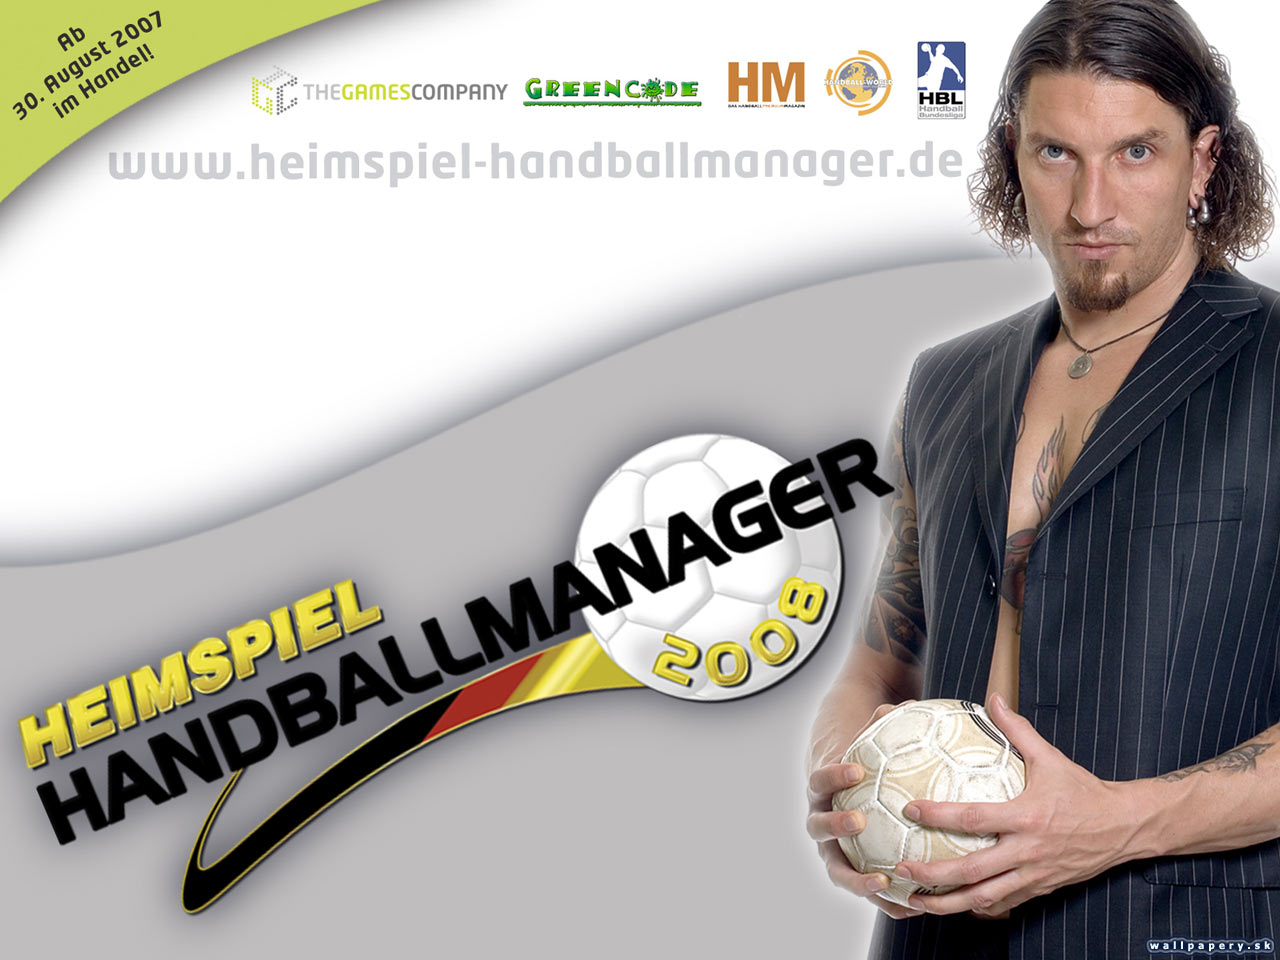 Handball Manager 2008 - wallpaper 1